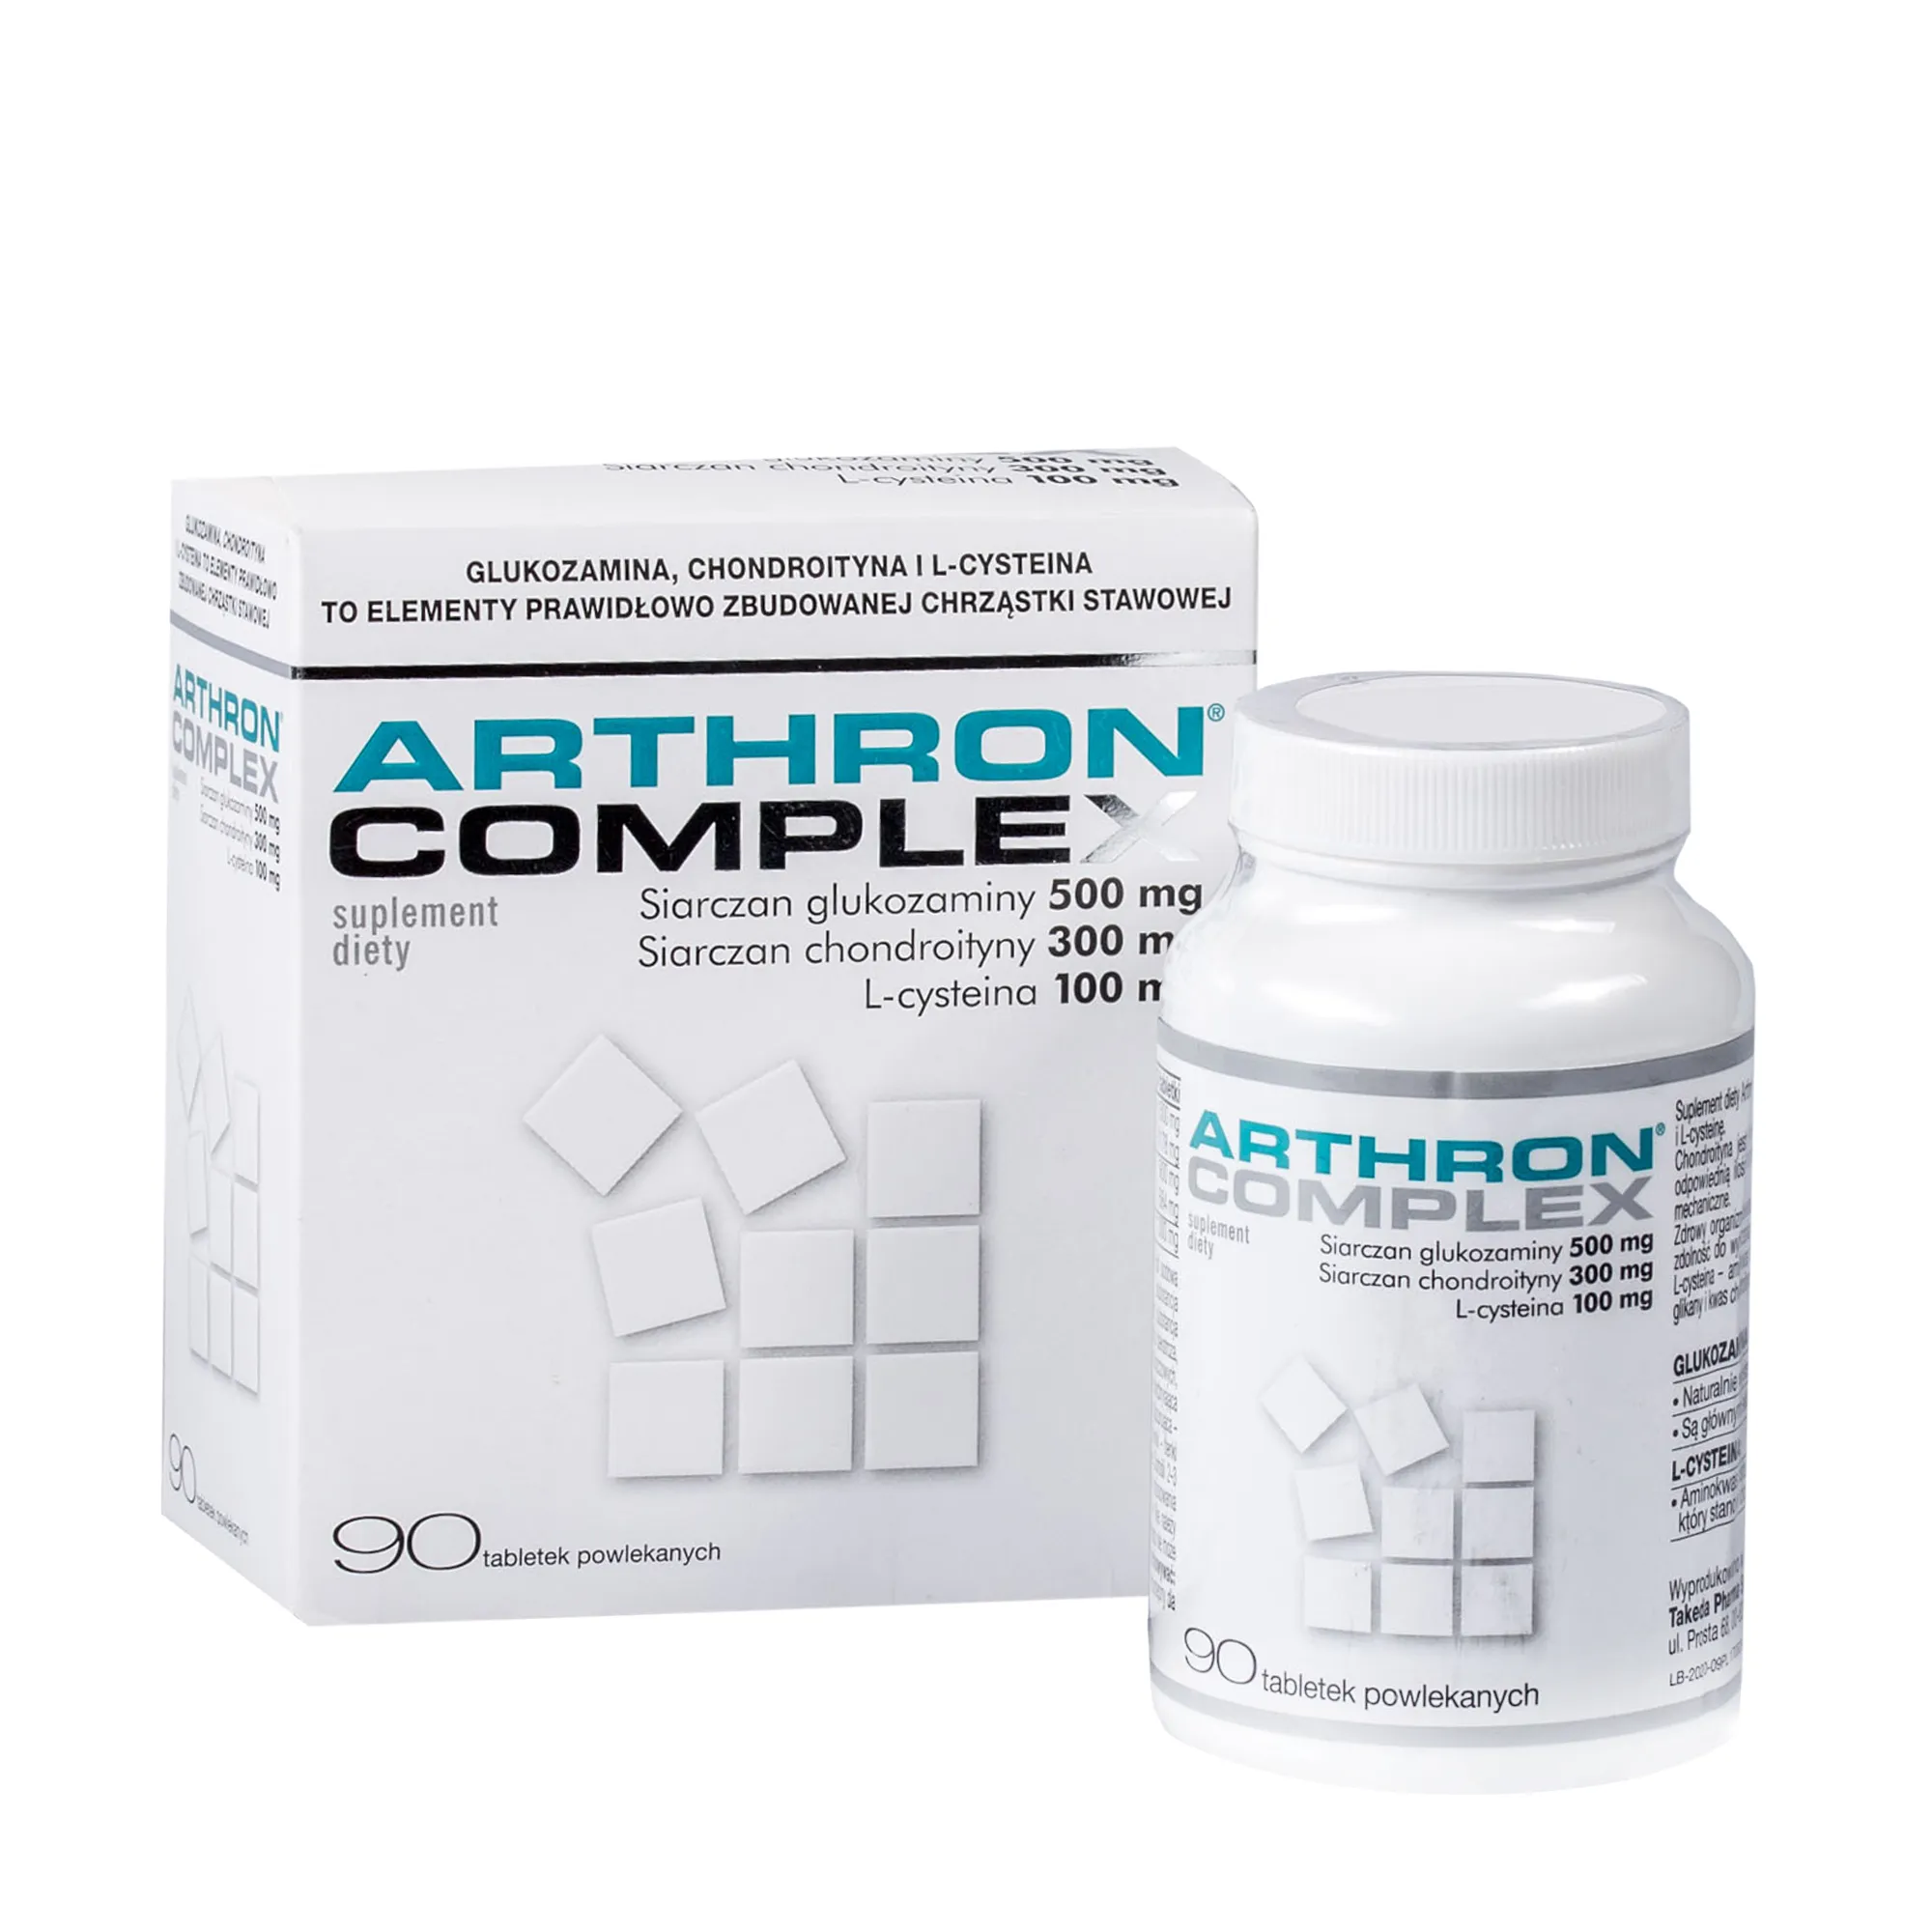 Arthron Complex, suplement diety, 90 tabletek